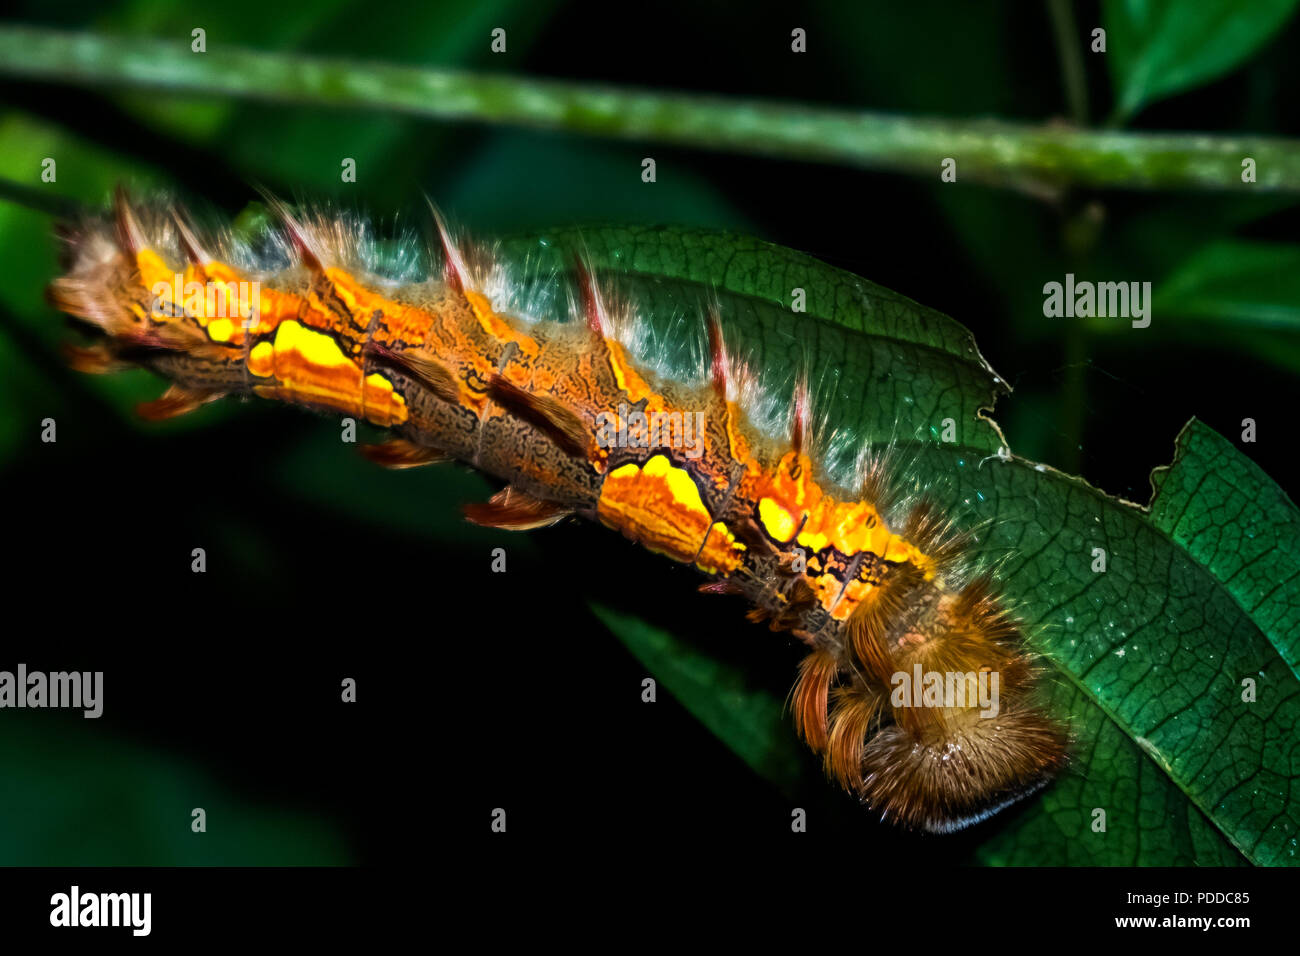 A dangerous colofull caterpillar in tha amazon forest. Oruga venenosa amazonica, bosque de Leticia, Colombia. Stock Photo